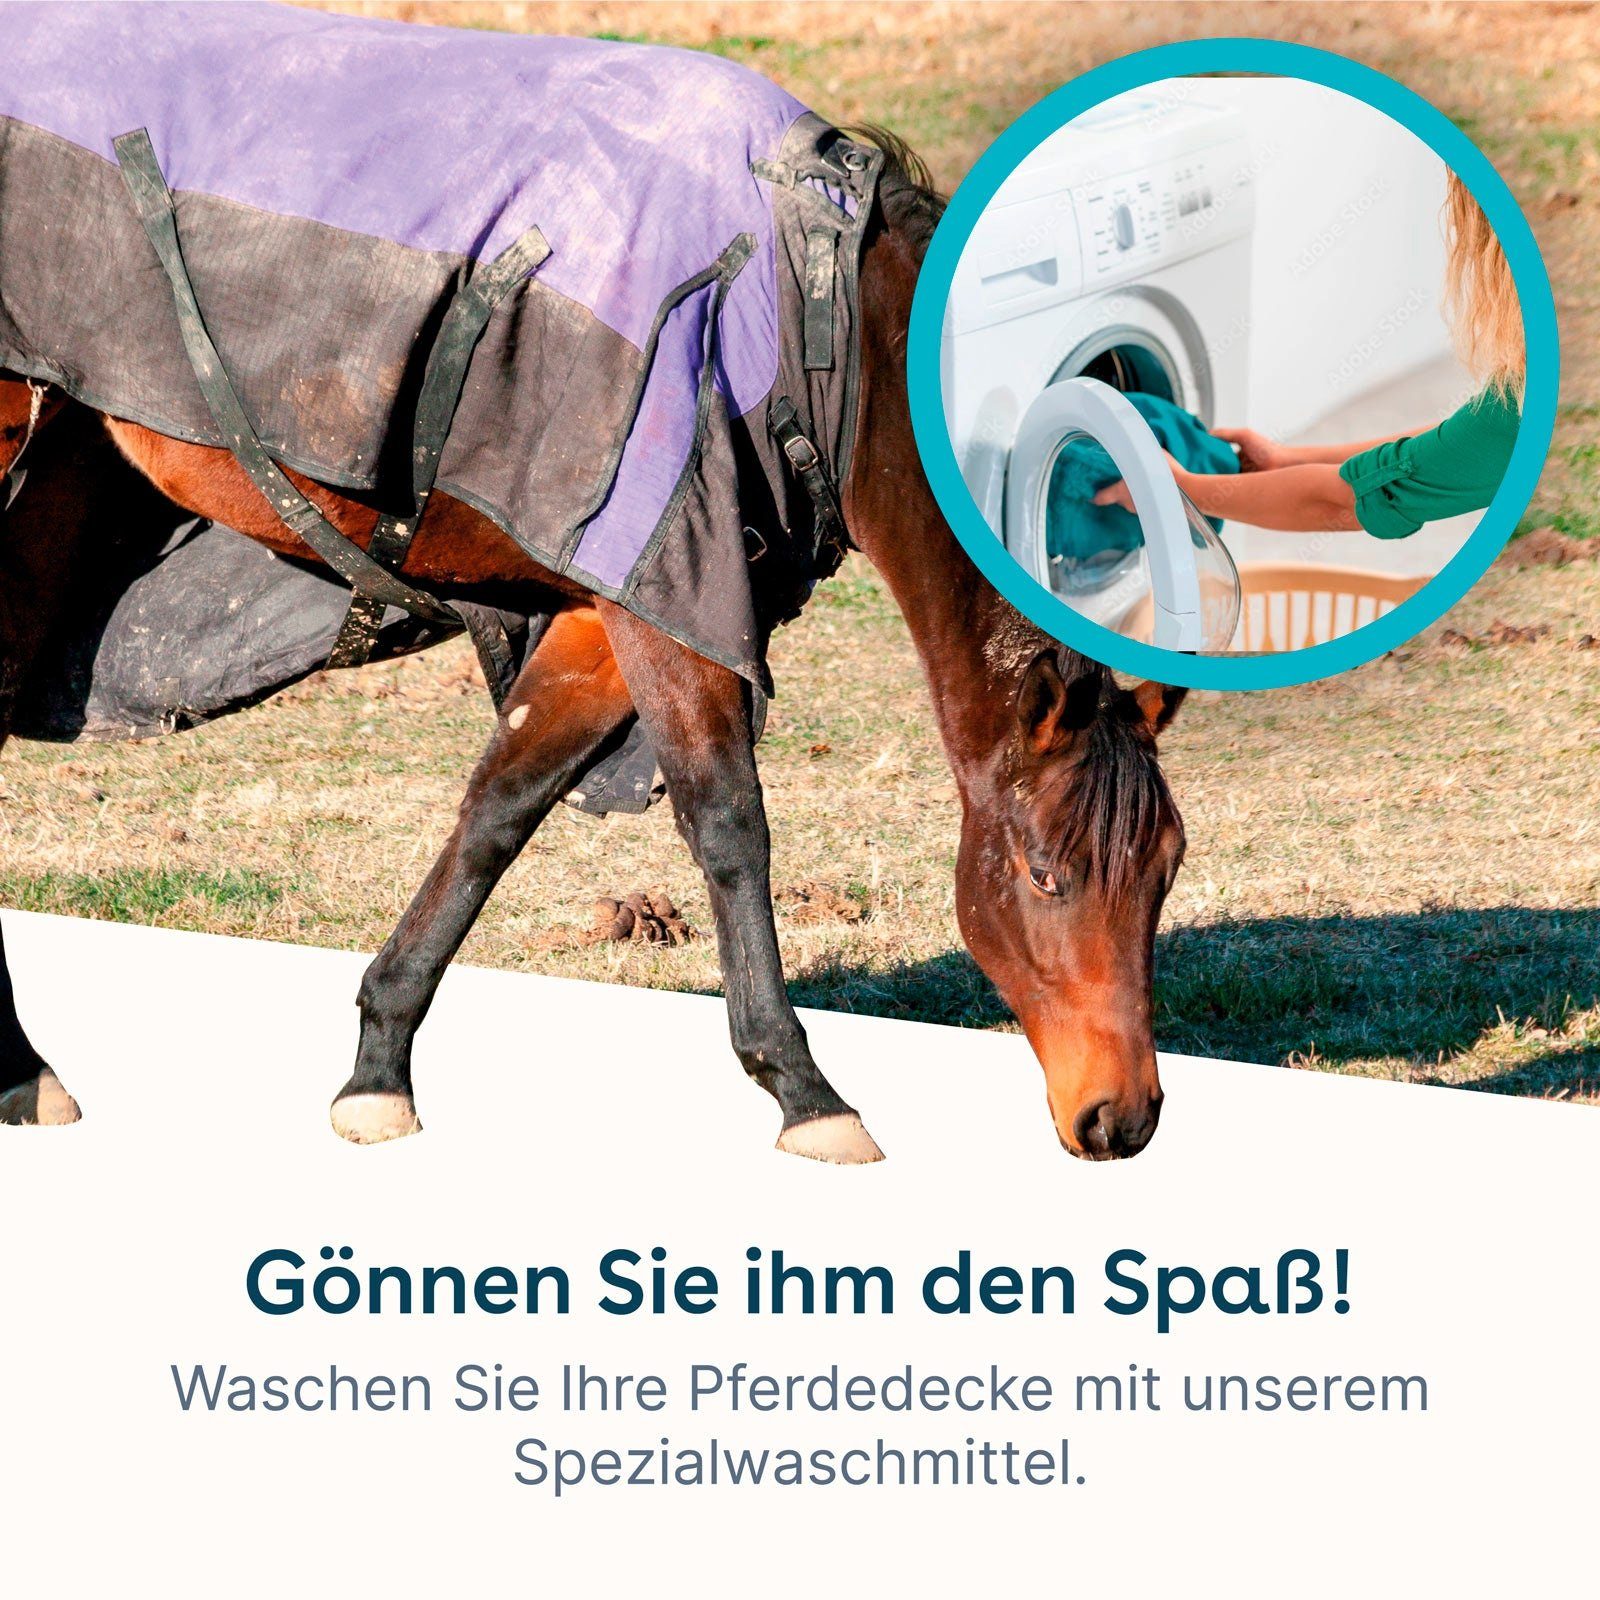 eco:fy Pferdedecken-Waschmittel Spezialwaschmittel (Entfernt wasseranziehenden Dreck) schonend den